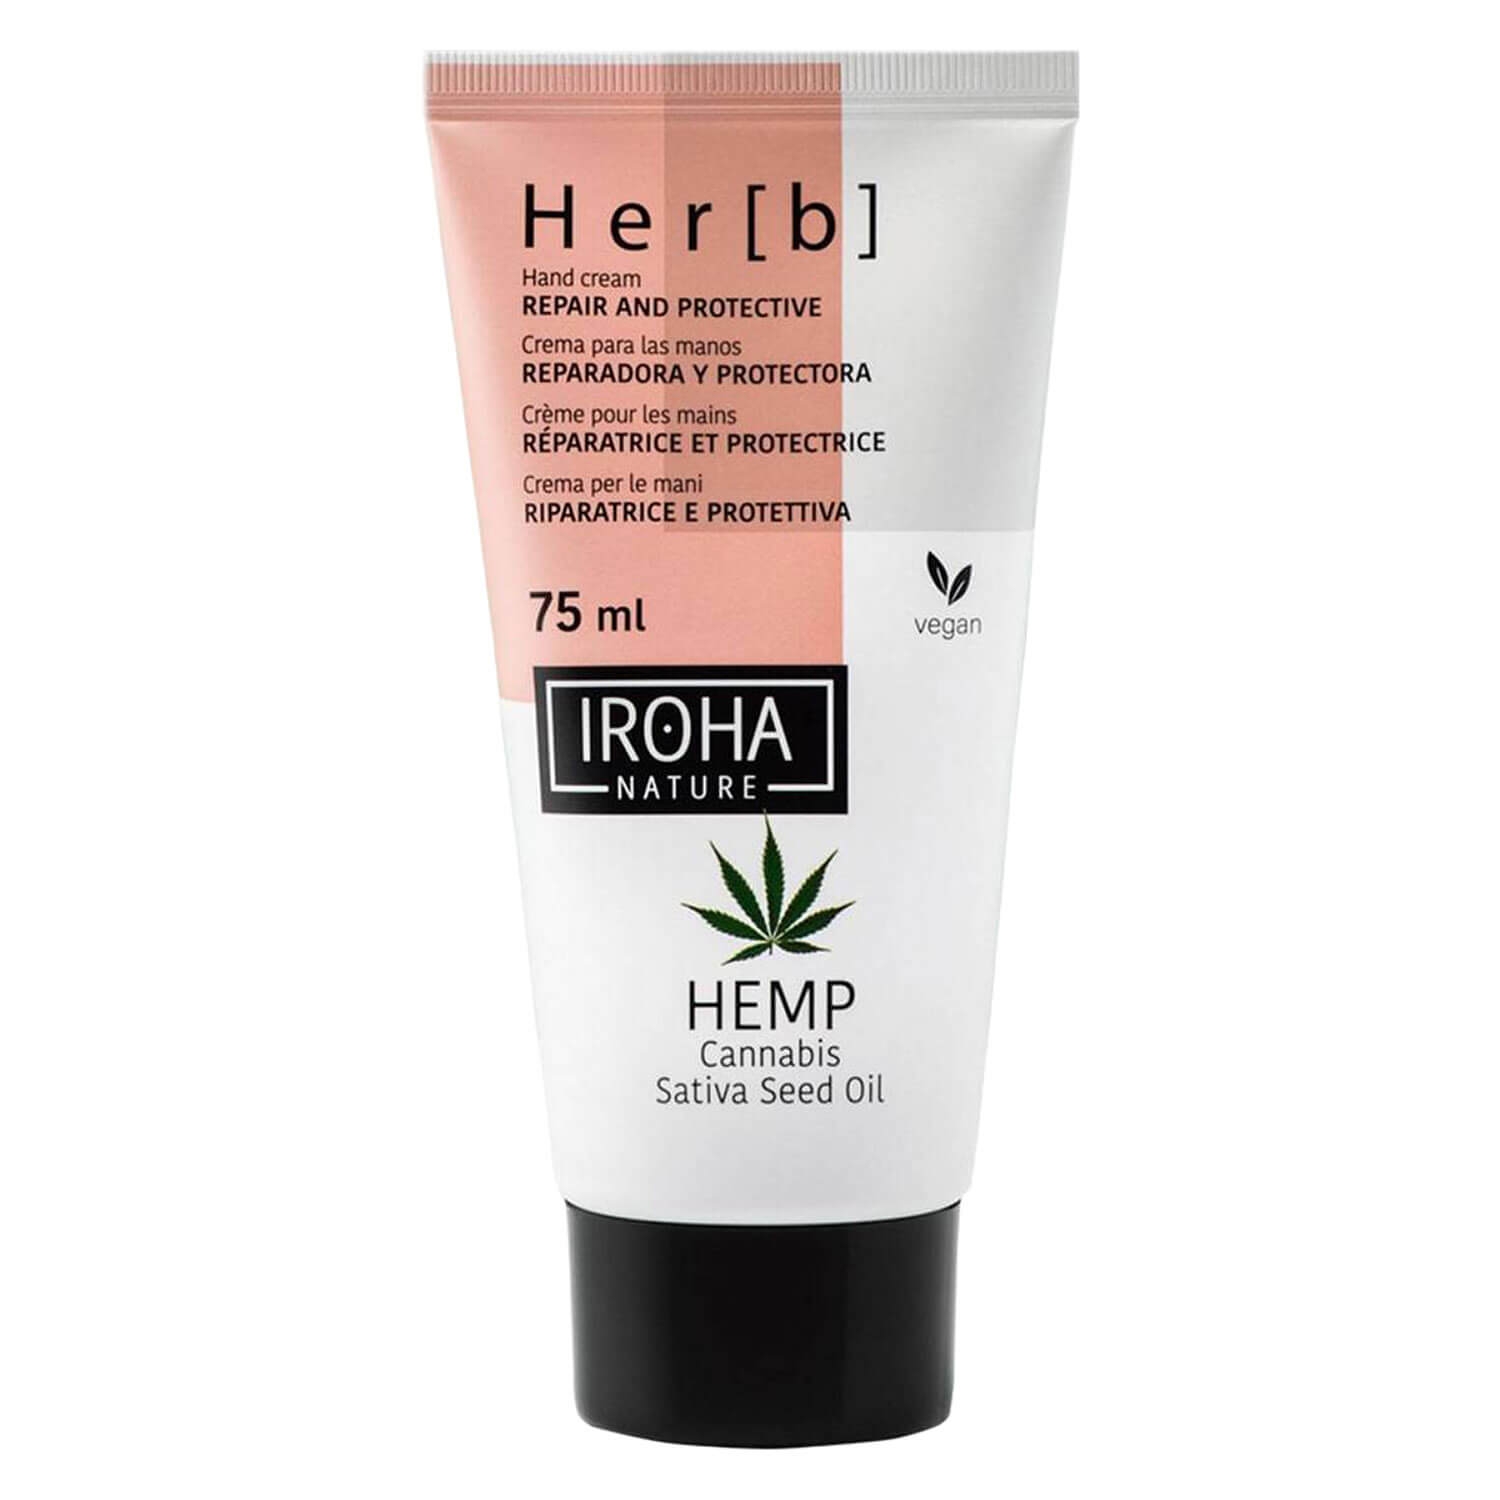 Produktbild von Iroha Nature - Hand Cream Herb Cannabis